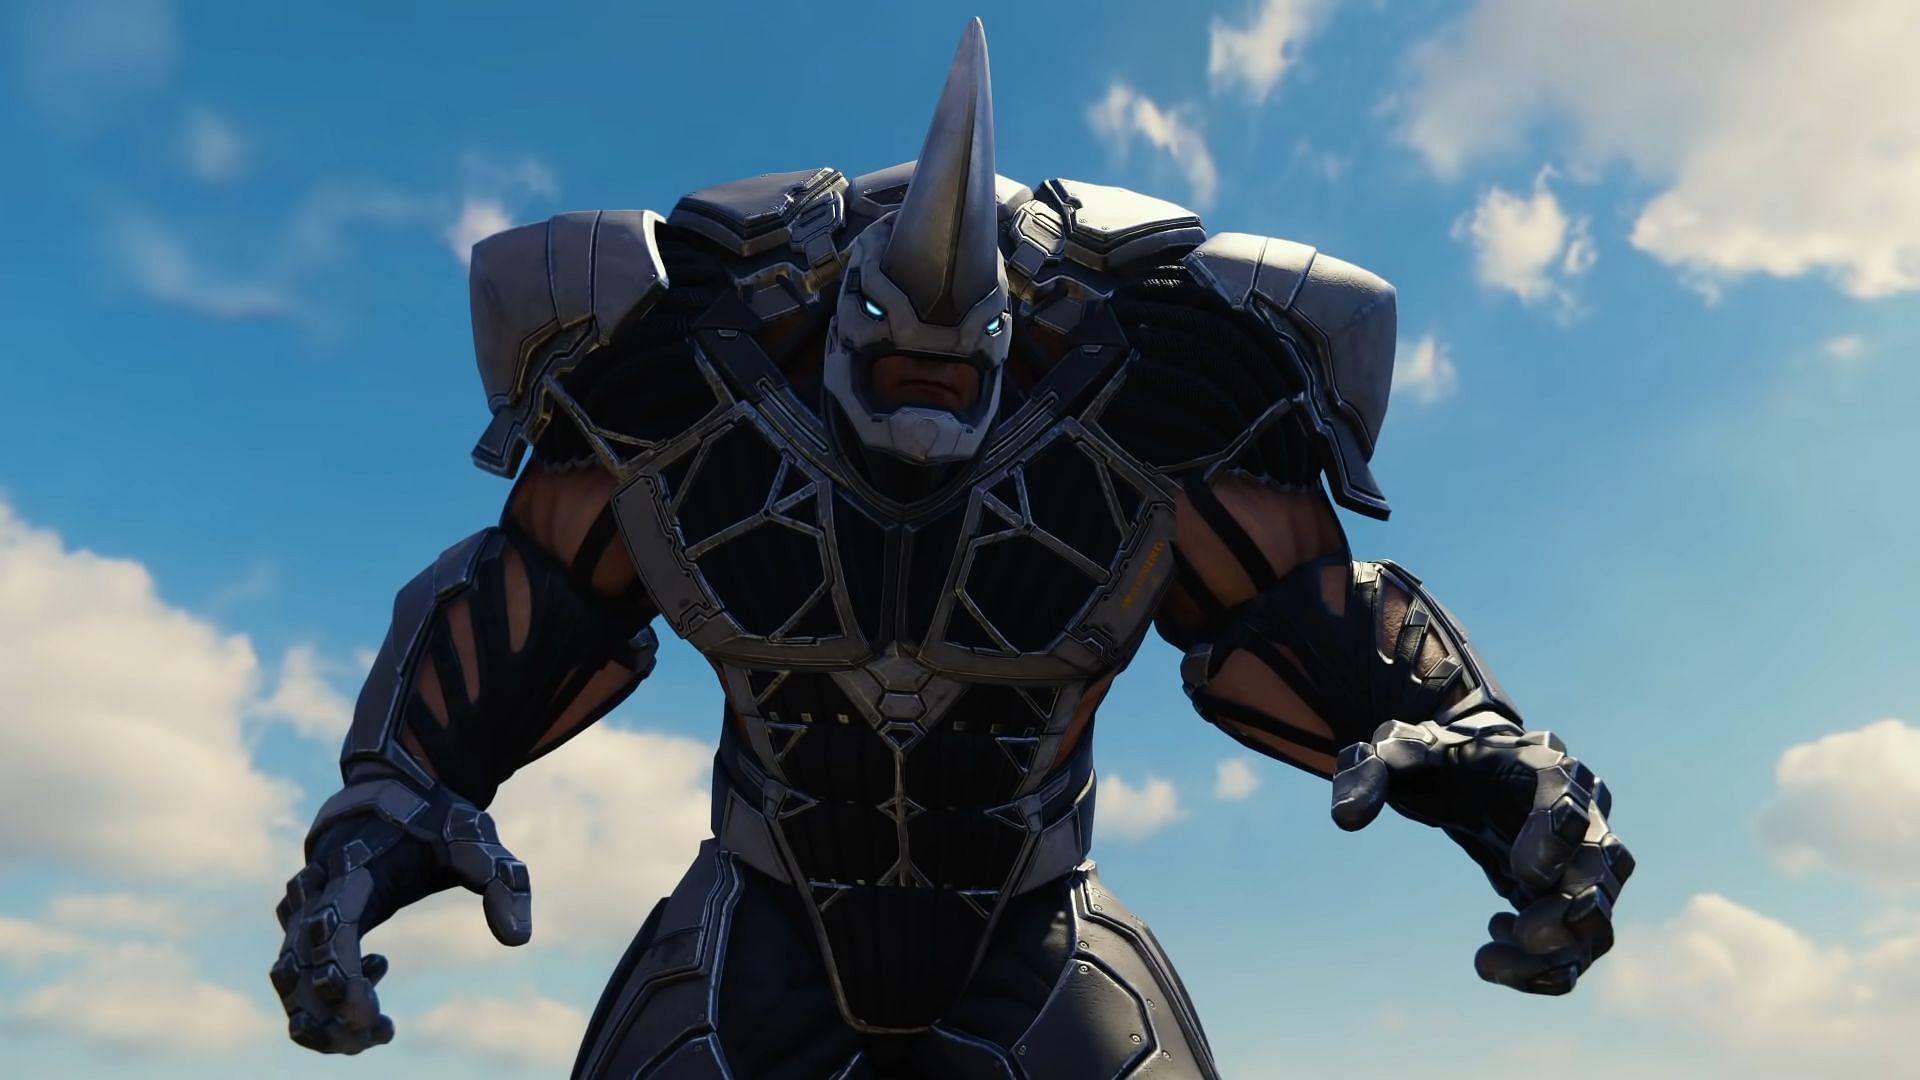 Rhino on X: Insomniac's Spider-Man PC mods be like